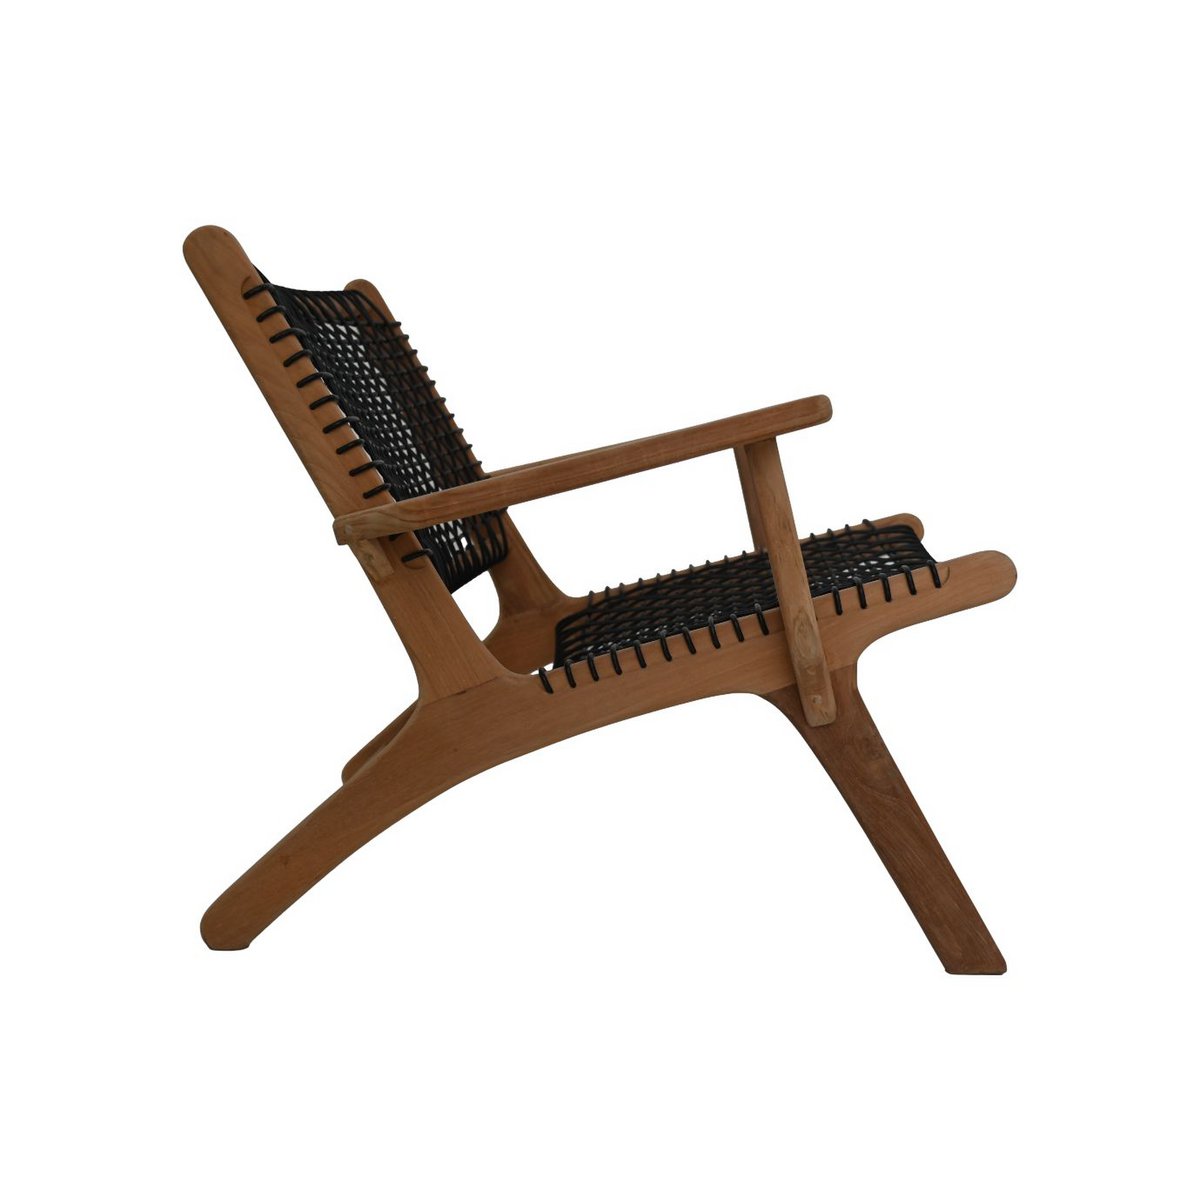 2 Charita chaise longue chairs - 83x80x70 - Natural - Teak